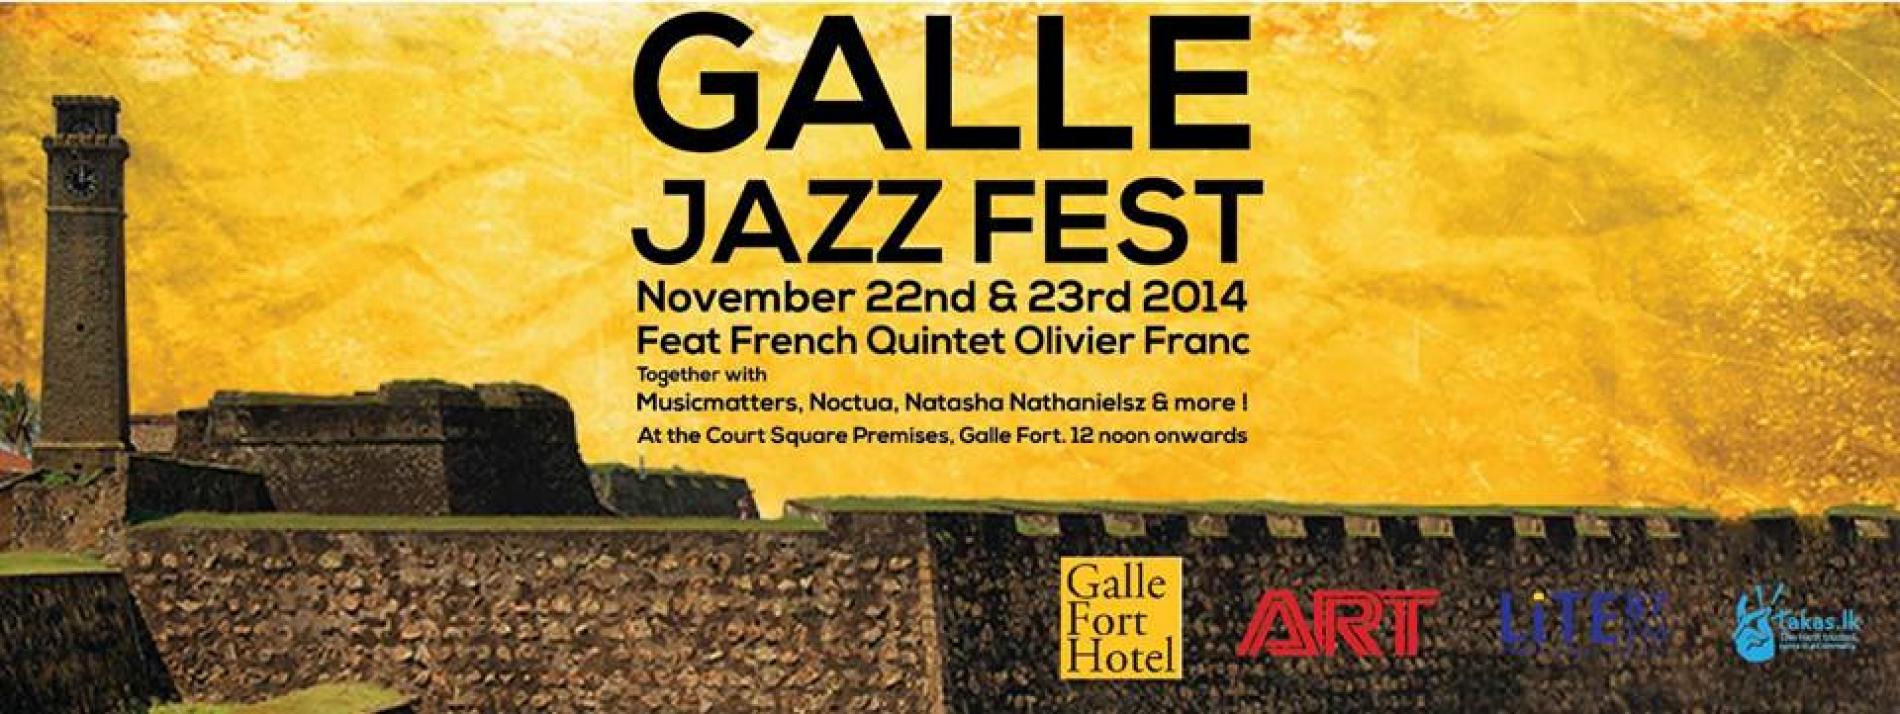 Galle Jazz Fest